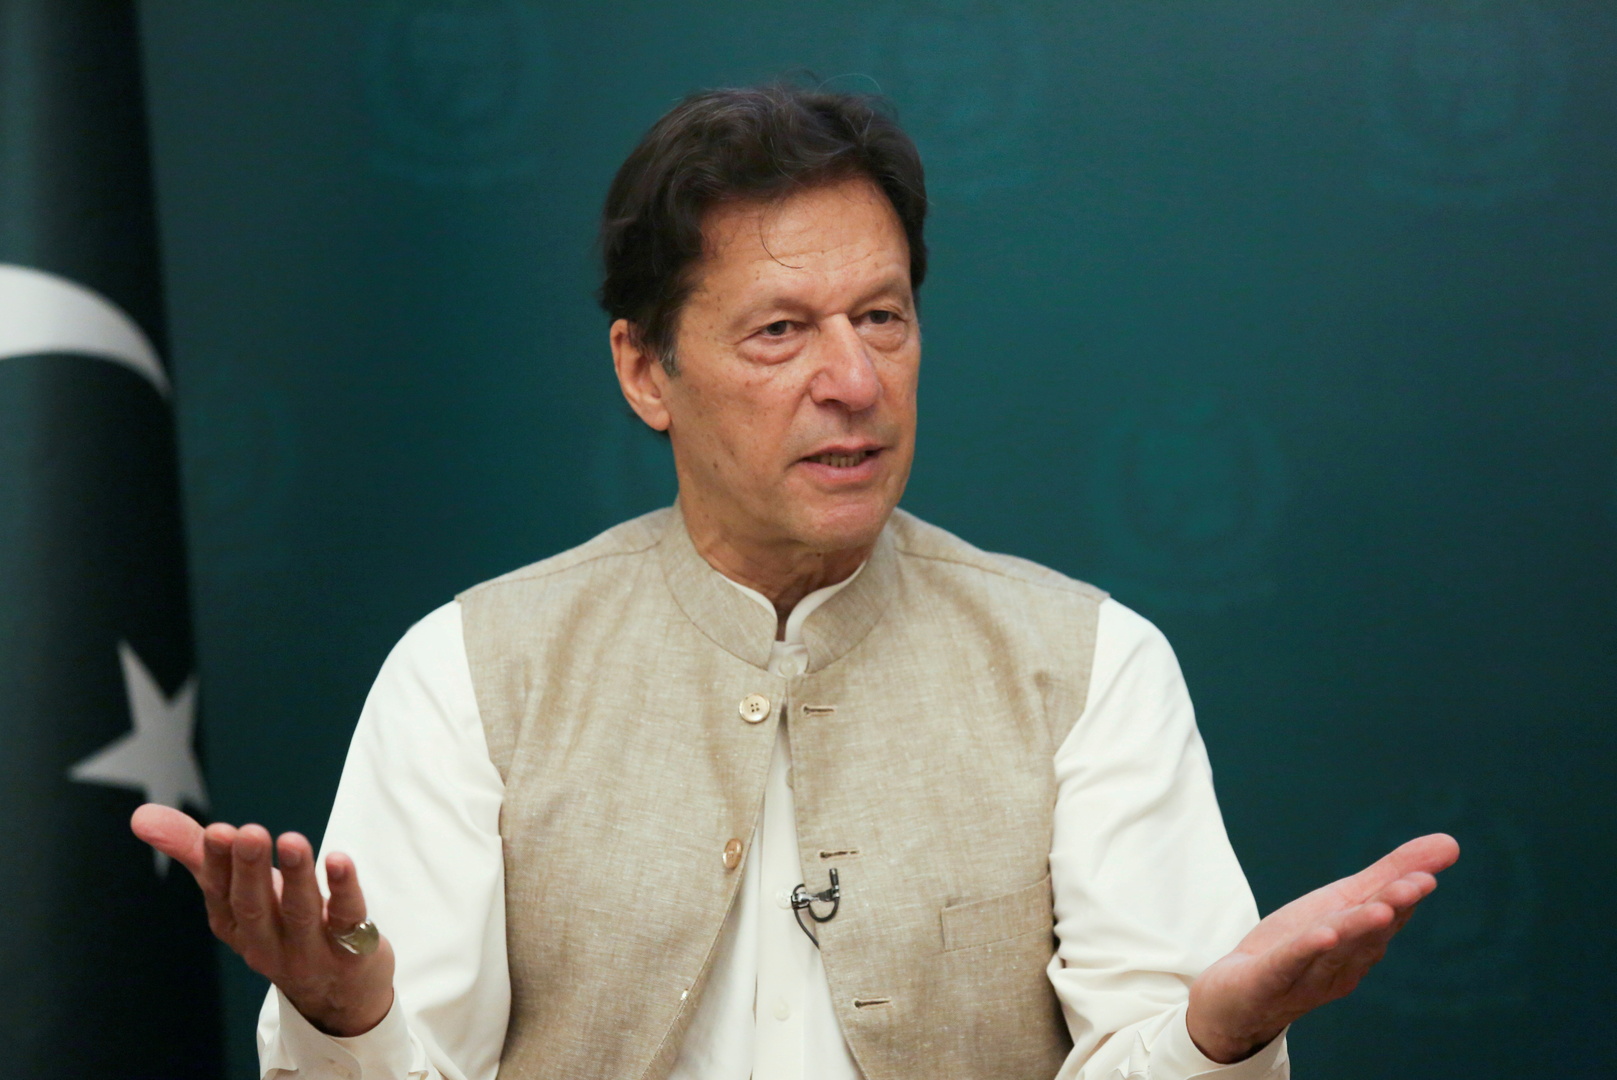 رئيس وزراء باكستان يدعو الدول الإسلامية لدعم أفغانستان ومواجهة انتهاكات الهند وإسرائيل